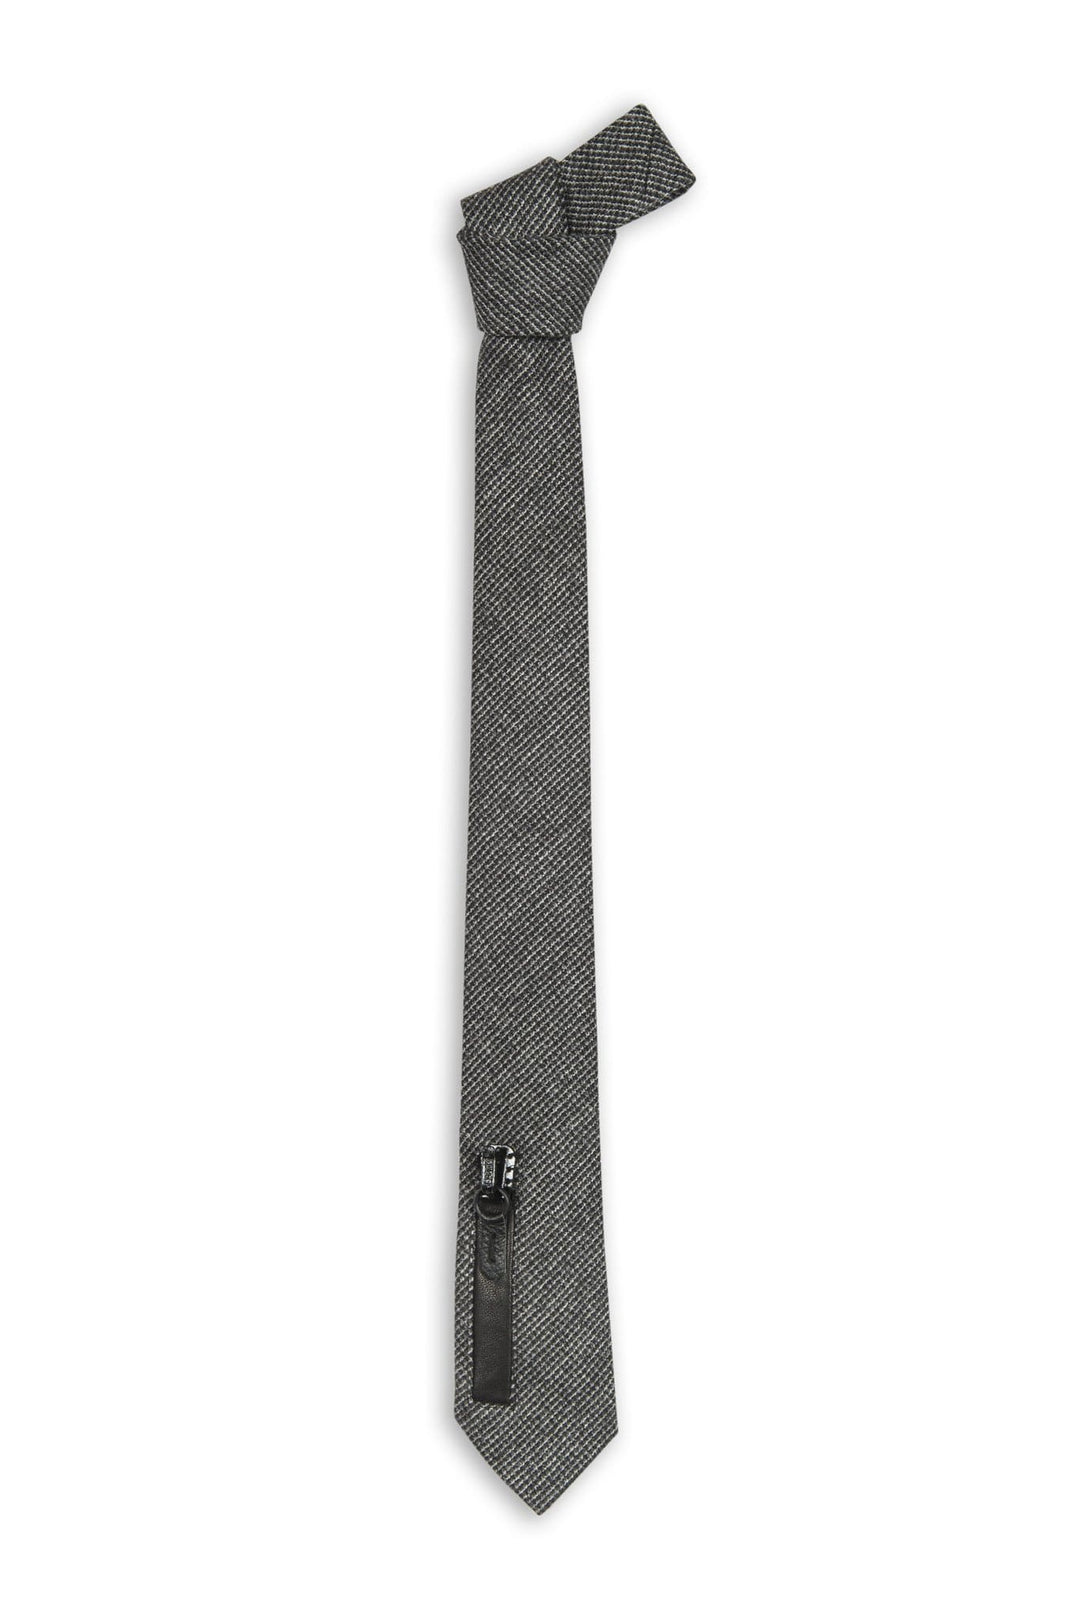 Swell Fellow Cravate 2.5''x 58'' - Sans le mouchoir assorti / Gris / 100% Laine Cravate Henri